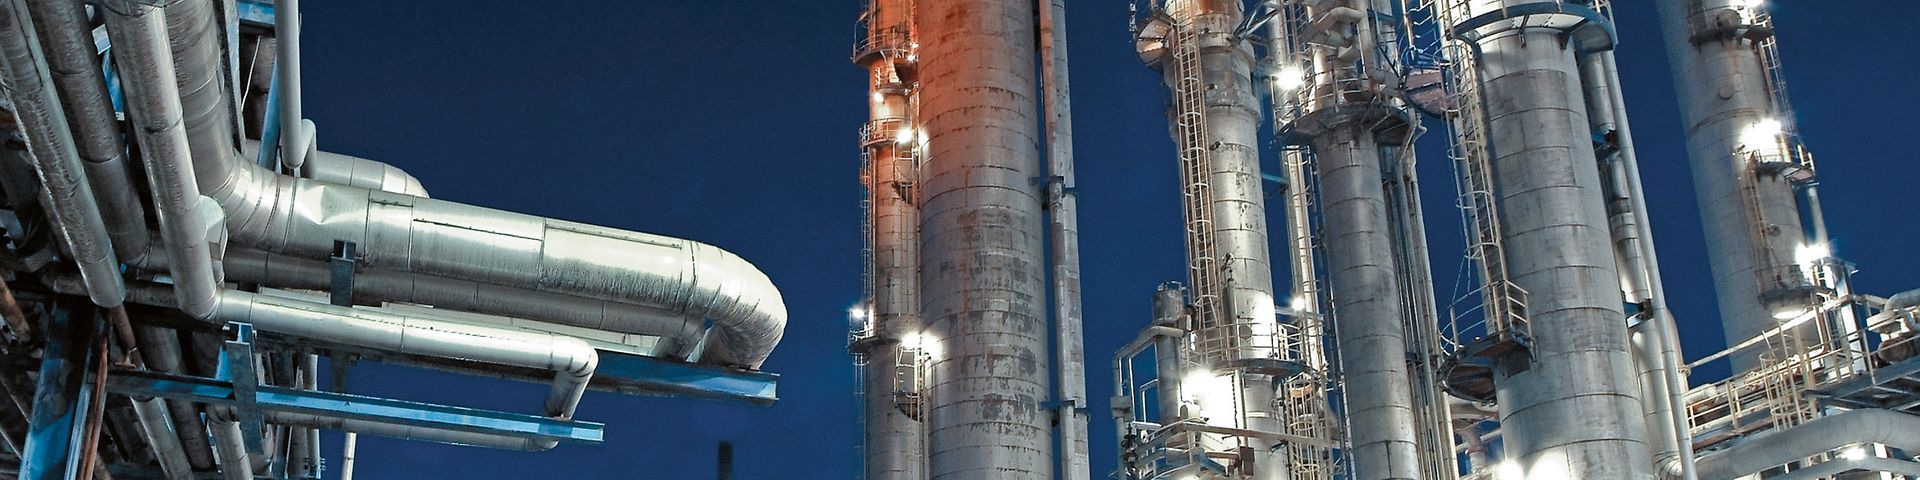 Raffinerie Werk Scholven in Gelsenkirchen bei Nacht